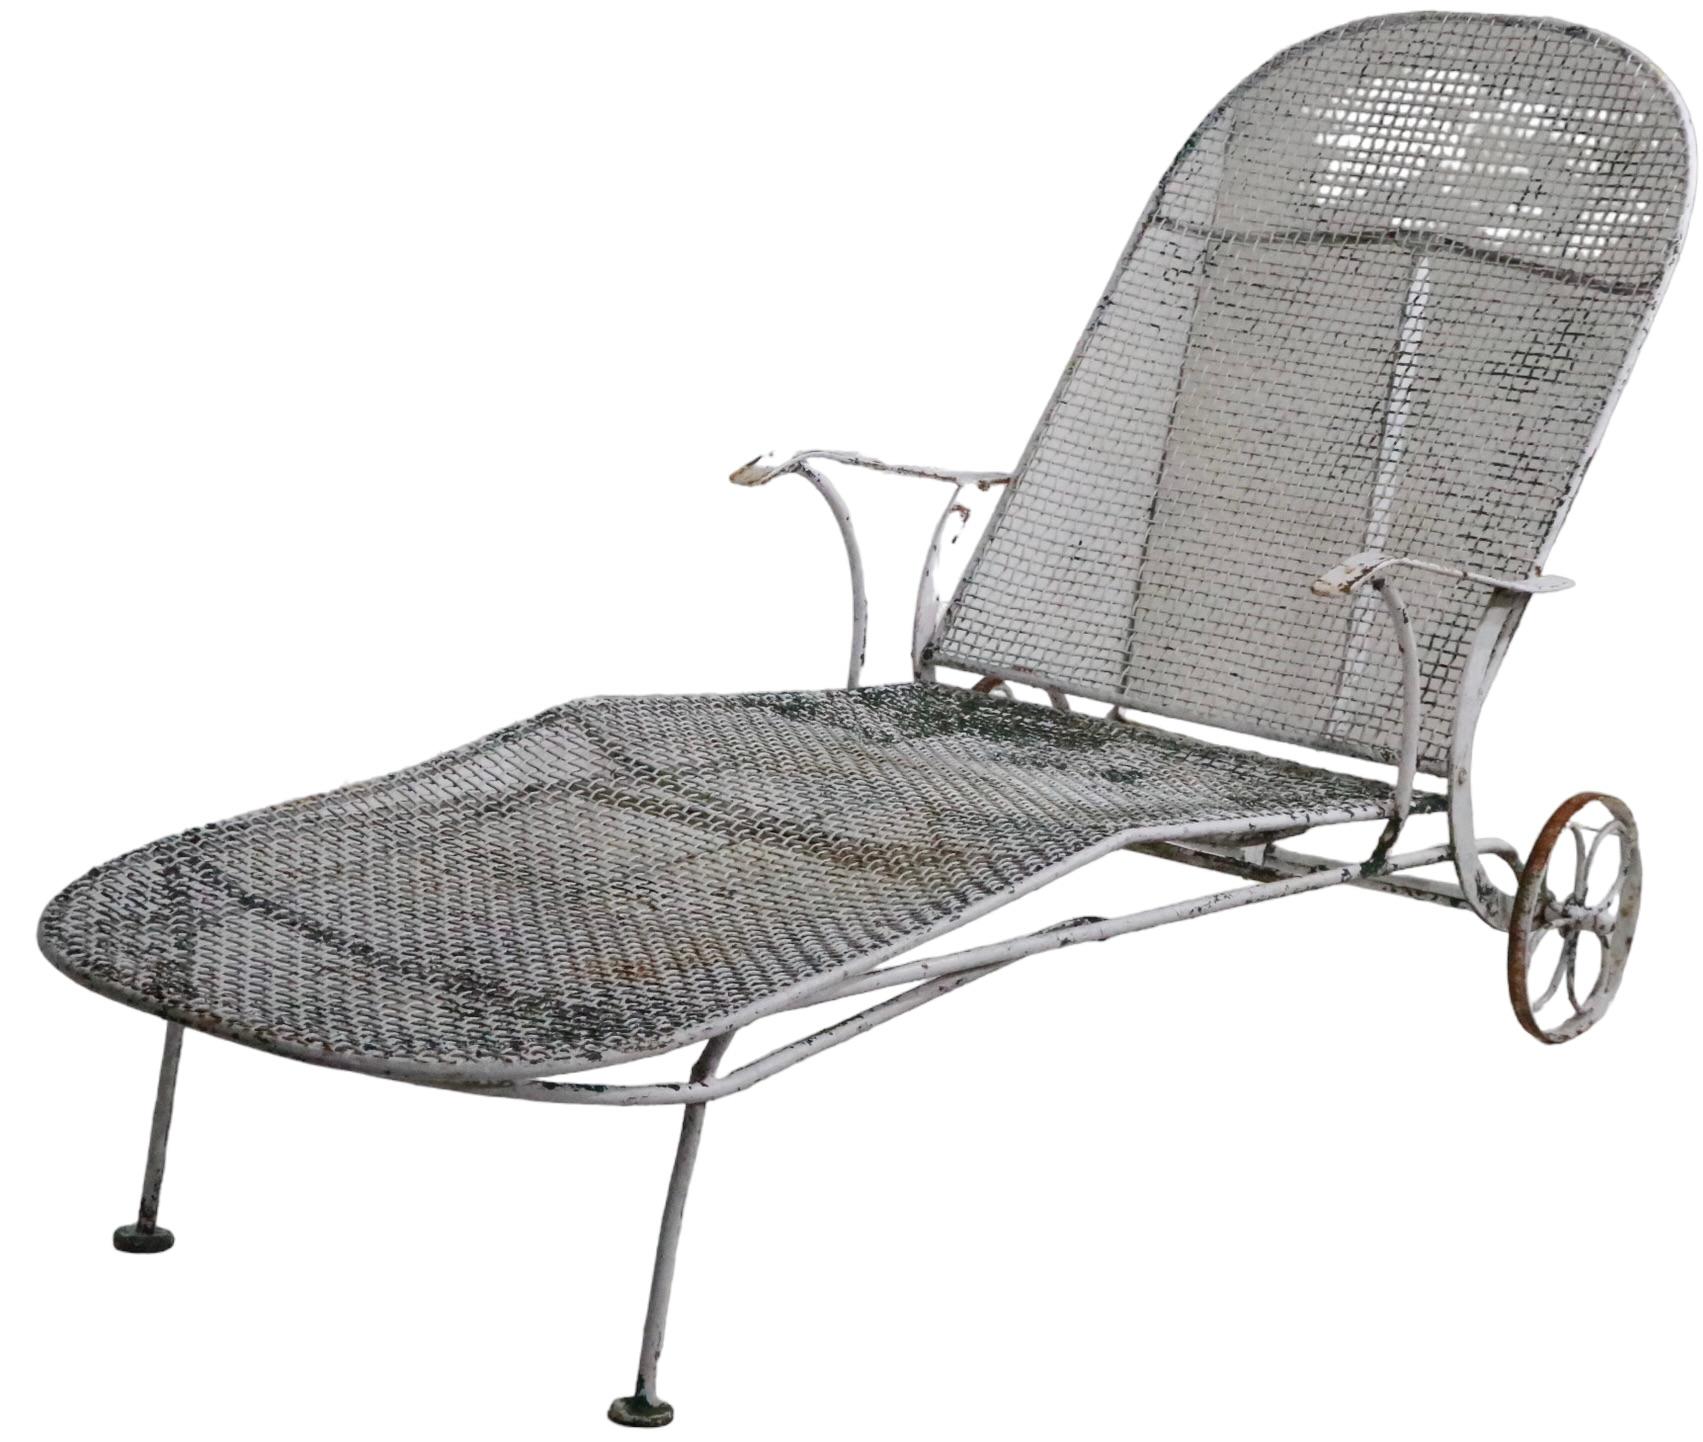 Chaise longue ajustable en fer forgé et métal de style Mid Century par Woodard Furniture. Cette chaise a été conçue dans le cadre de la très recherchée ligne Sculptura, vers 1950. Le salon comprend  un dossier réglable en quatre positions. Cet